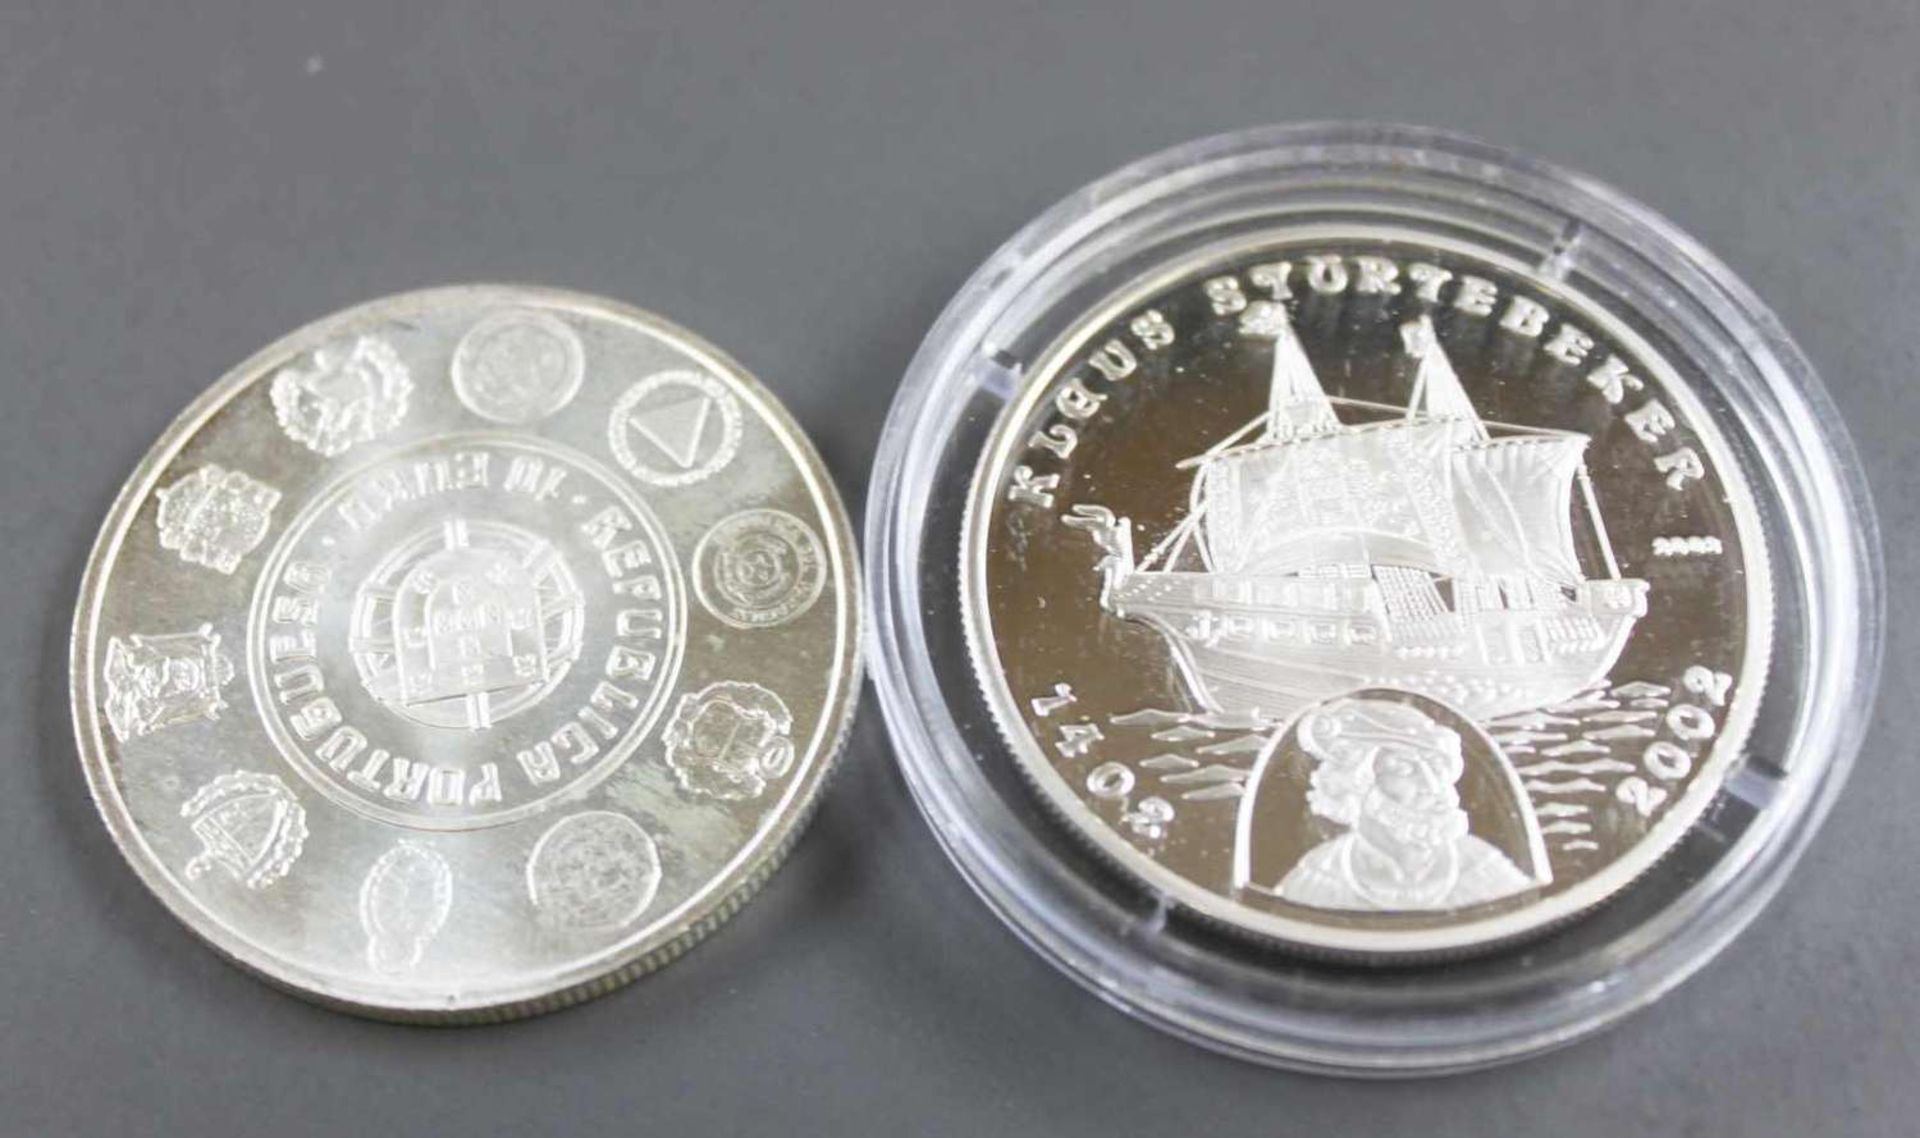 Portugal / Benin 2002/03, zwei Silbermünzen: Portugal 2003 10 Euro "Nautica", Silber 500, Gewicht: